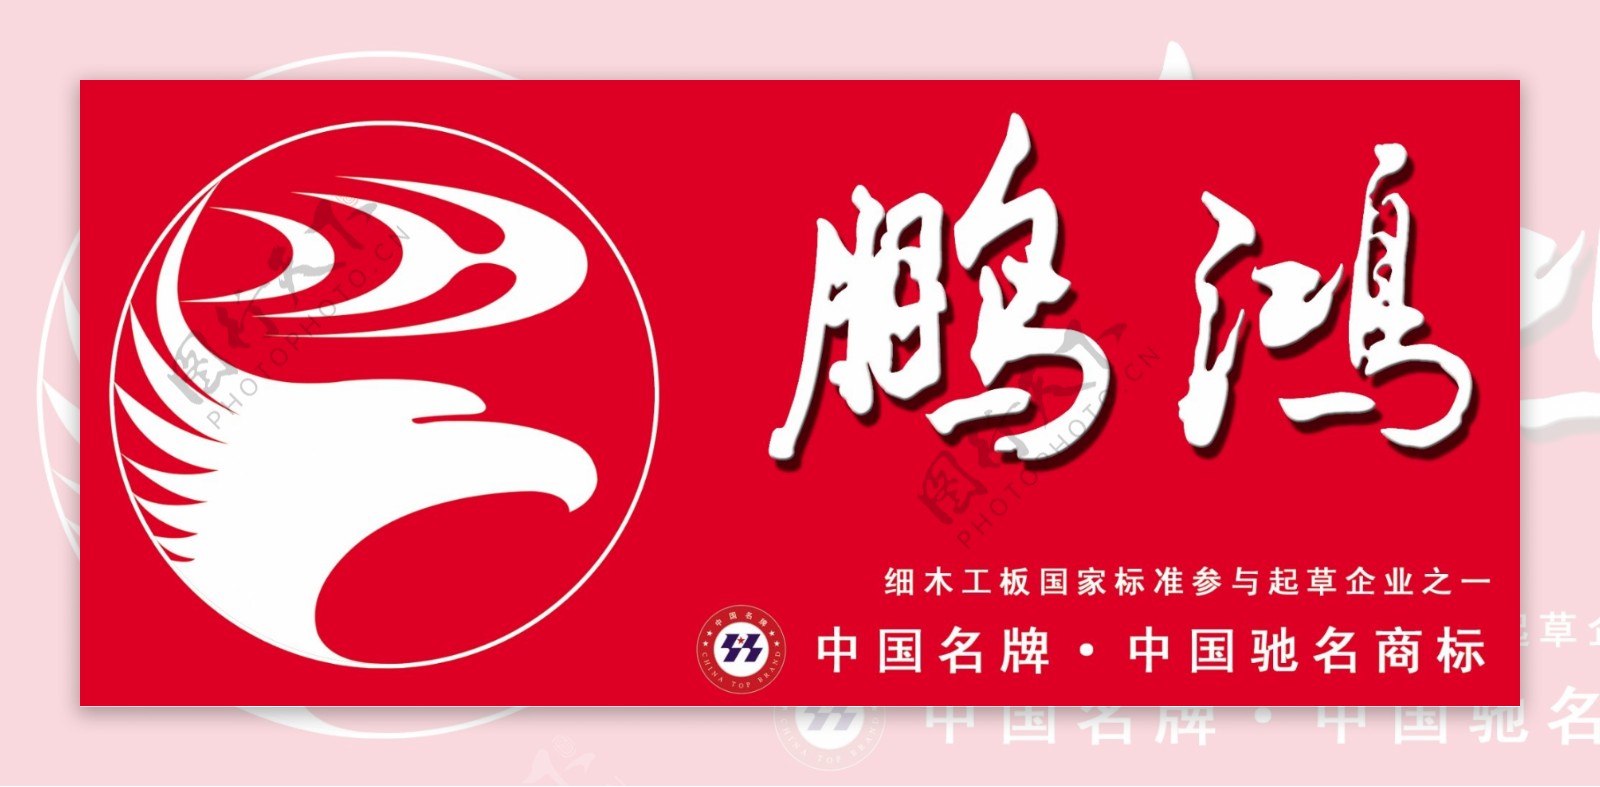 鹏鸿logo图片